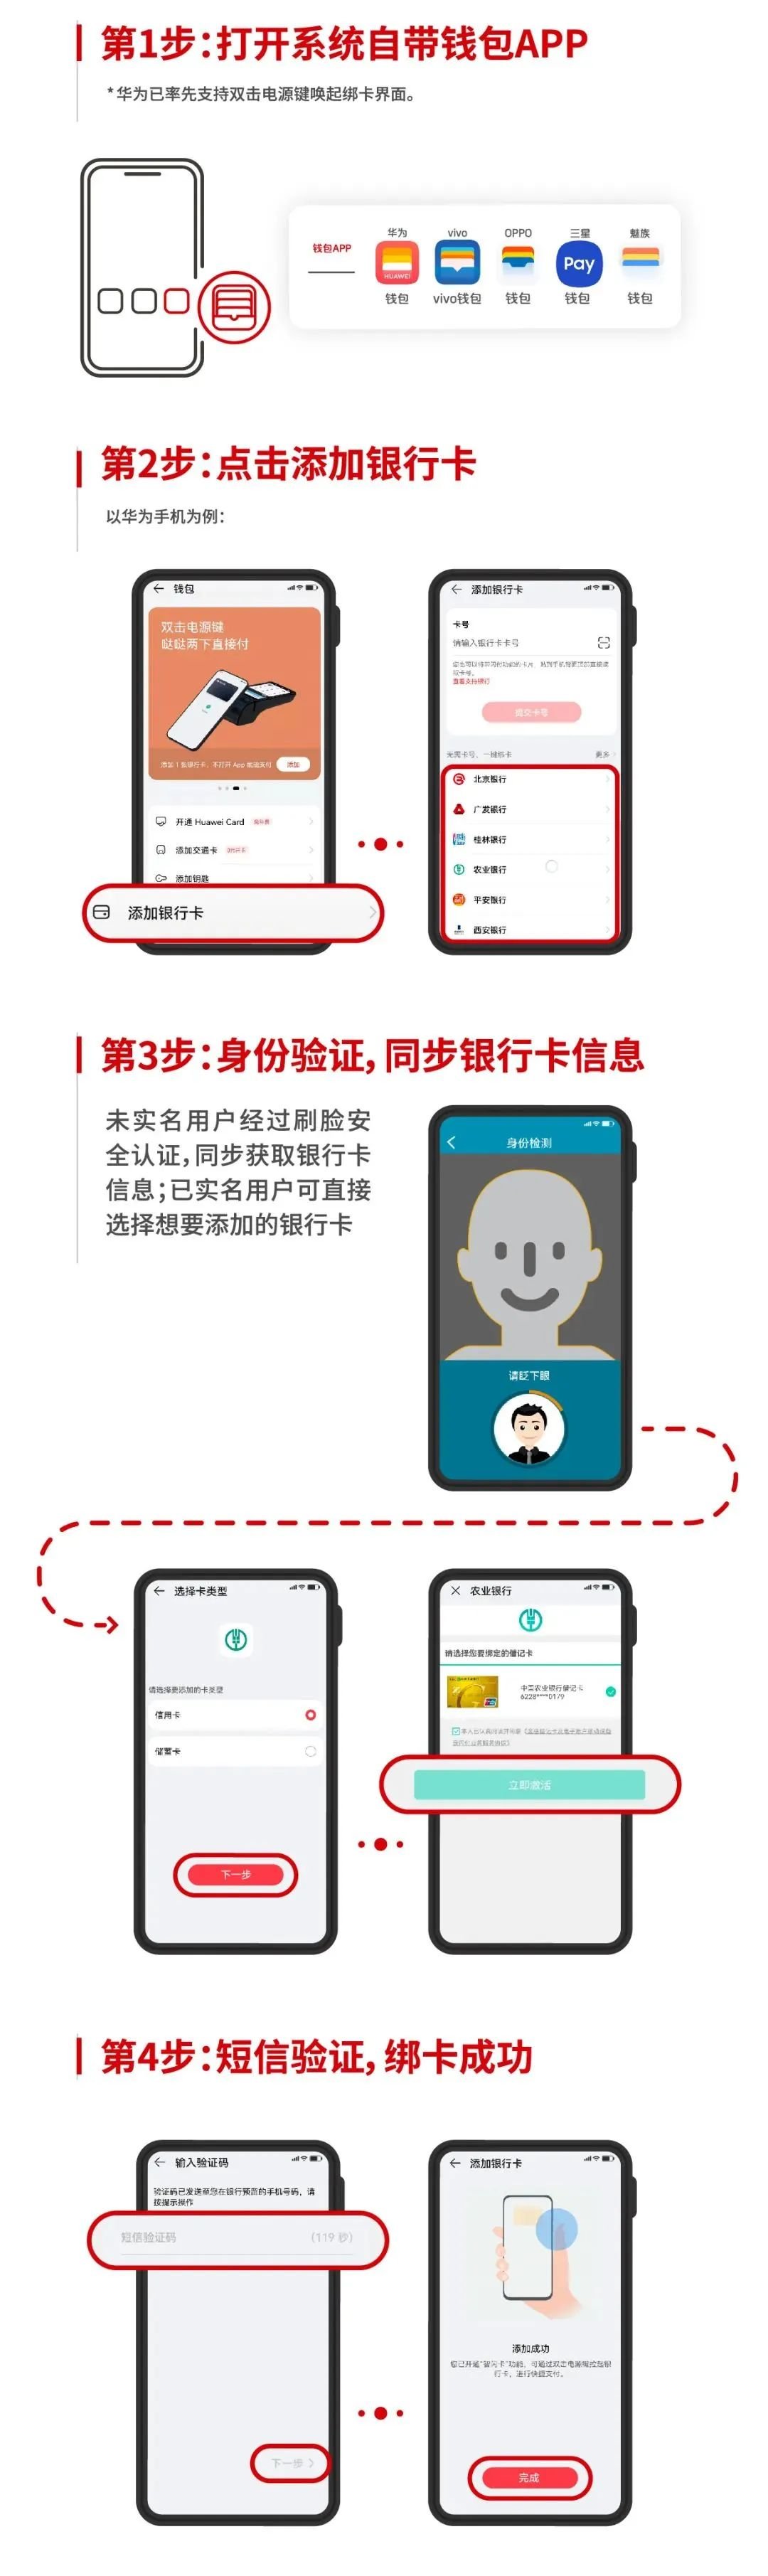 徐州地铁app怎么买票便宜2